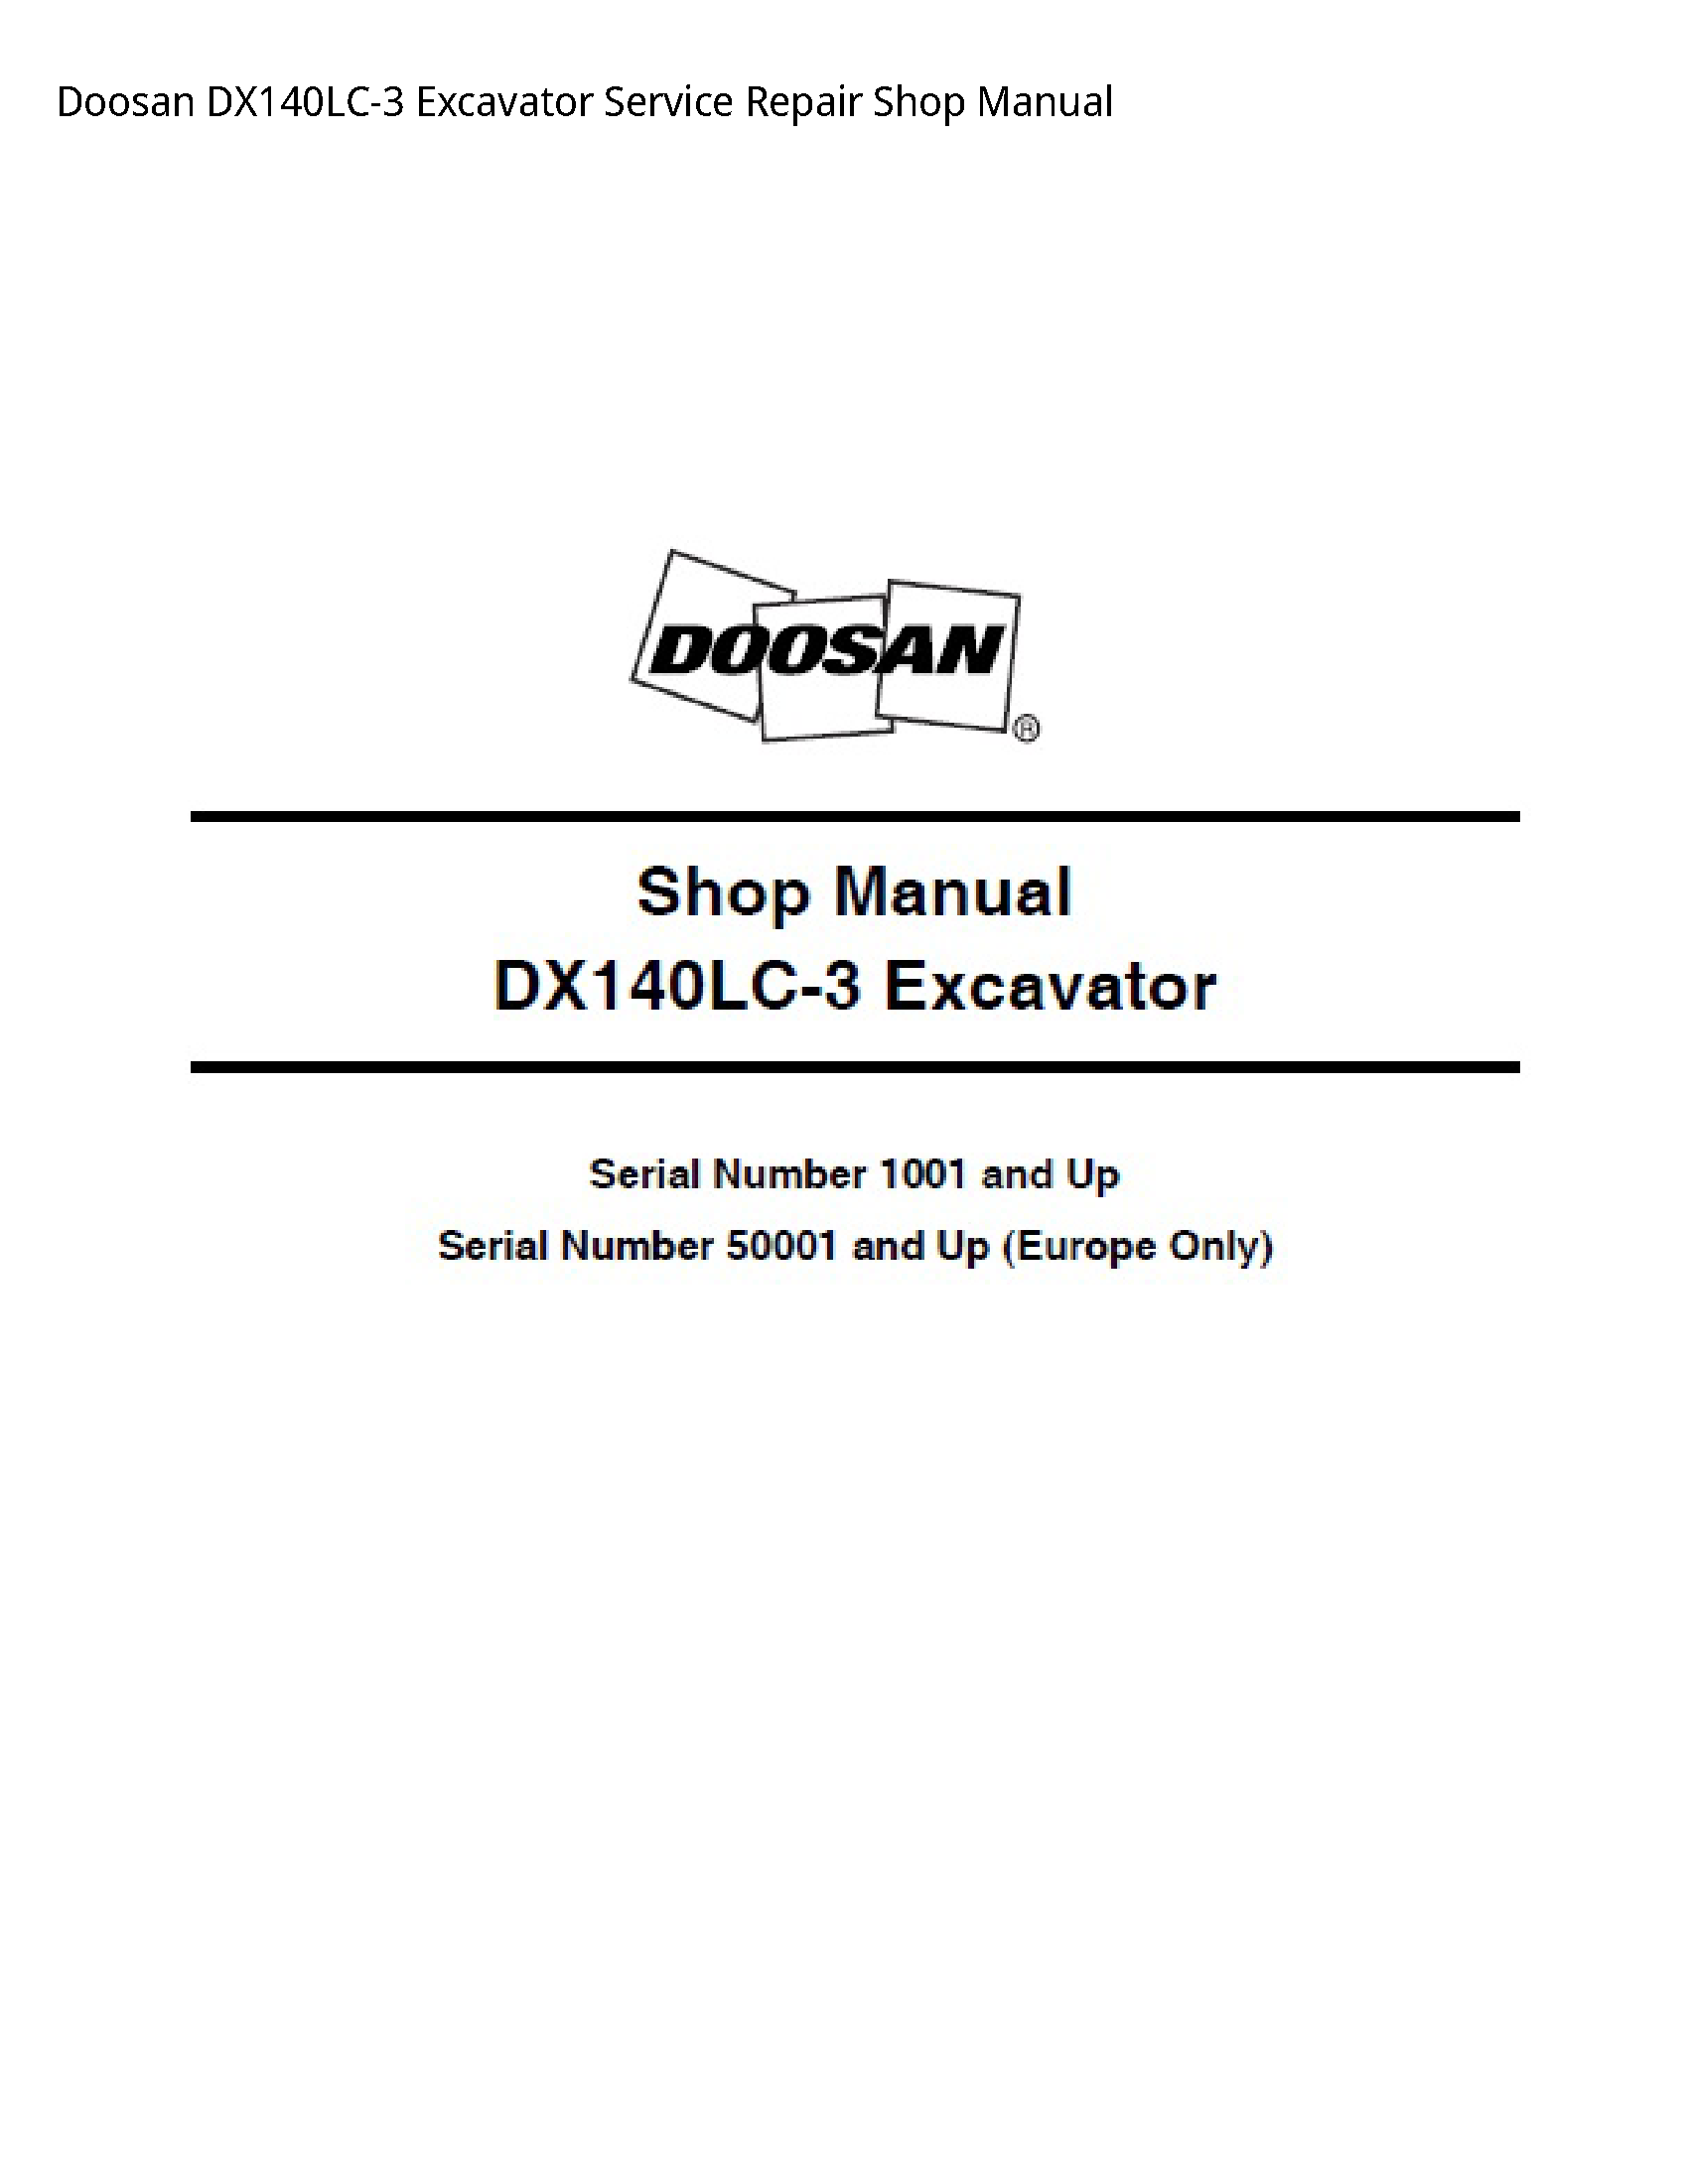 Doosan DX140LC-3 Excavator manual